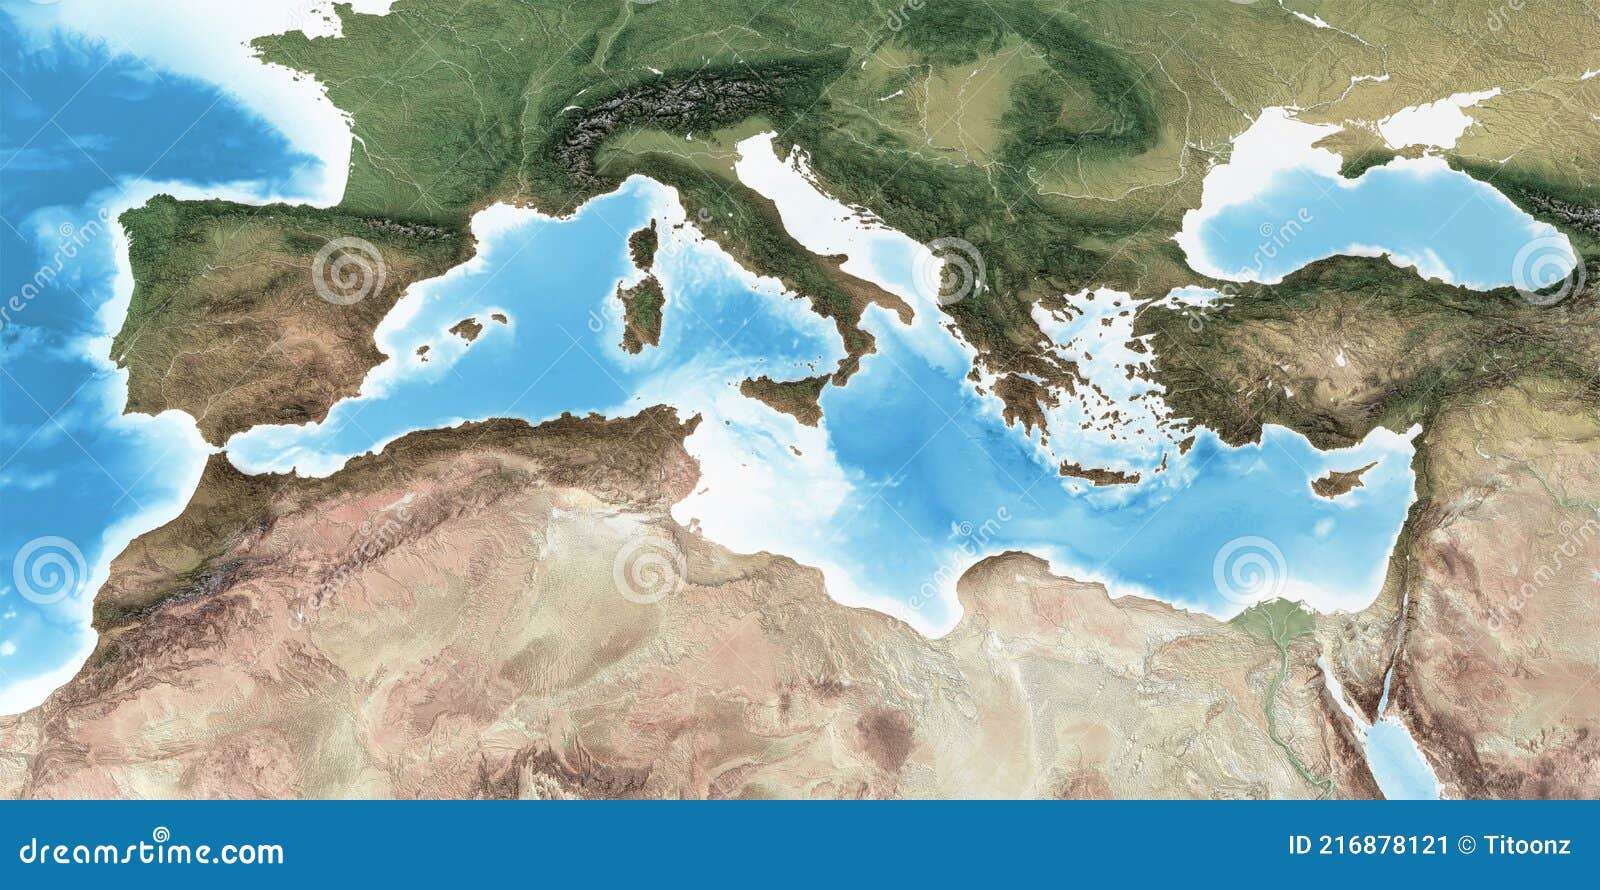 high resolution detailed map of mediterranean region